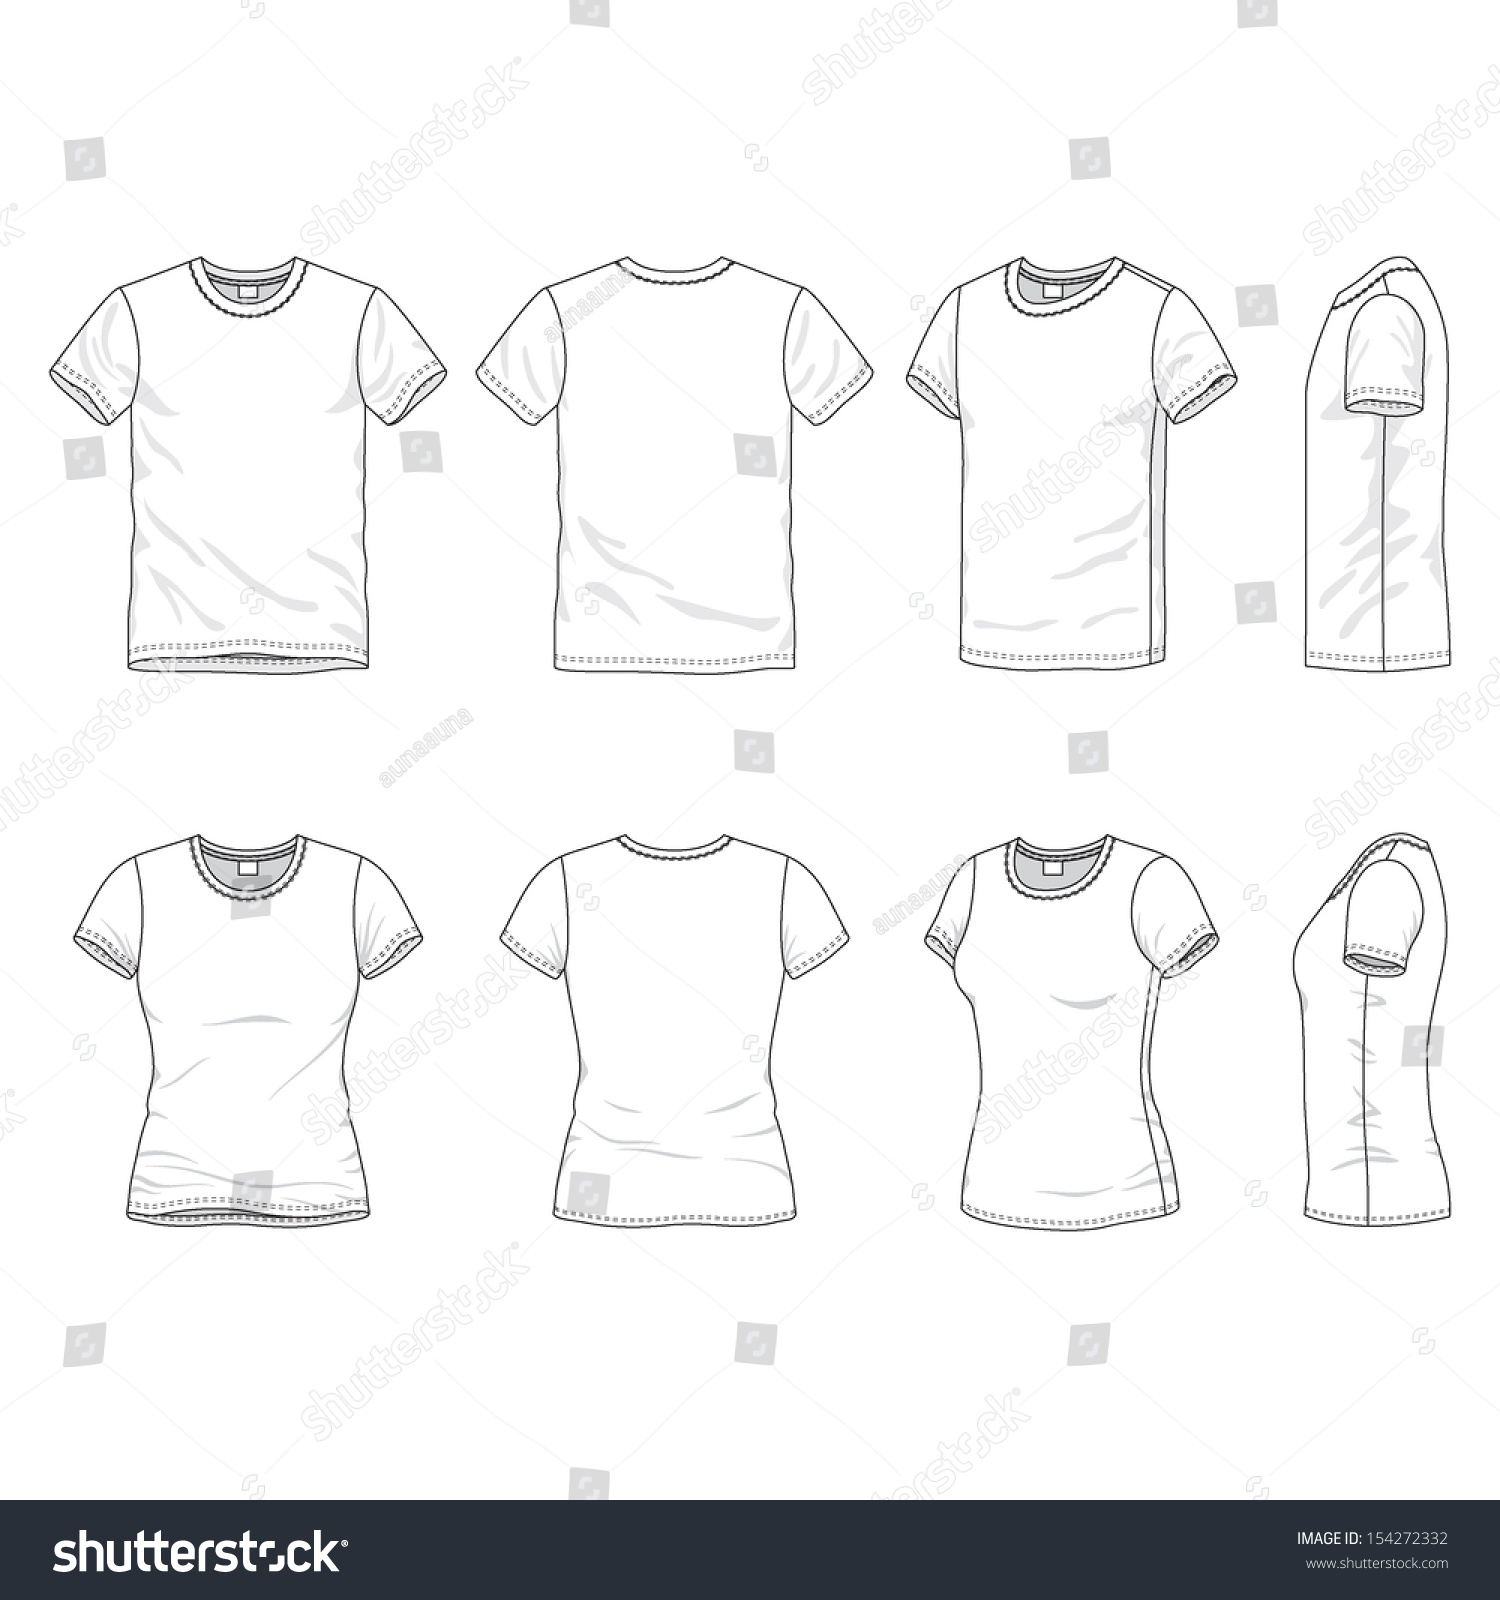 Womens shirt template : images photos et images vectorielles de stock